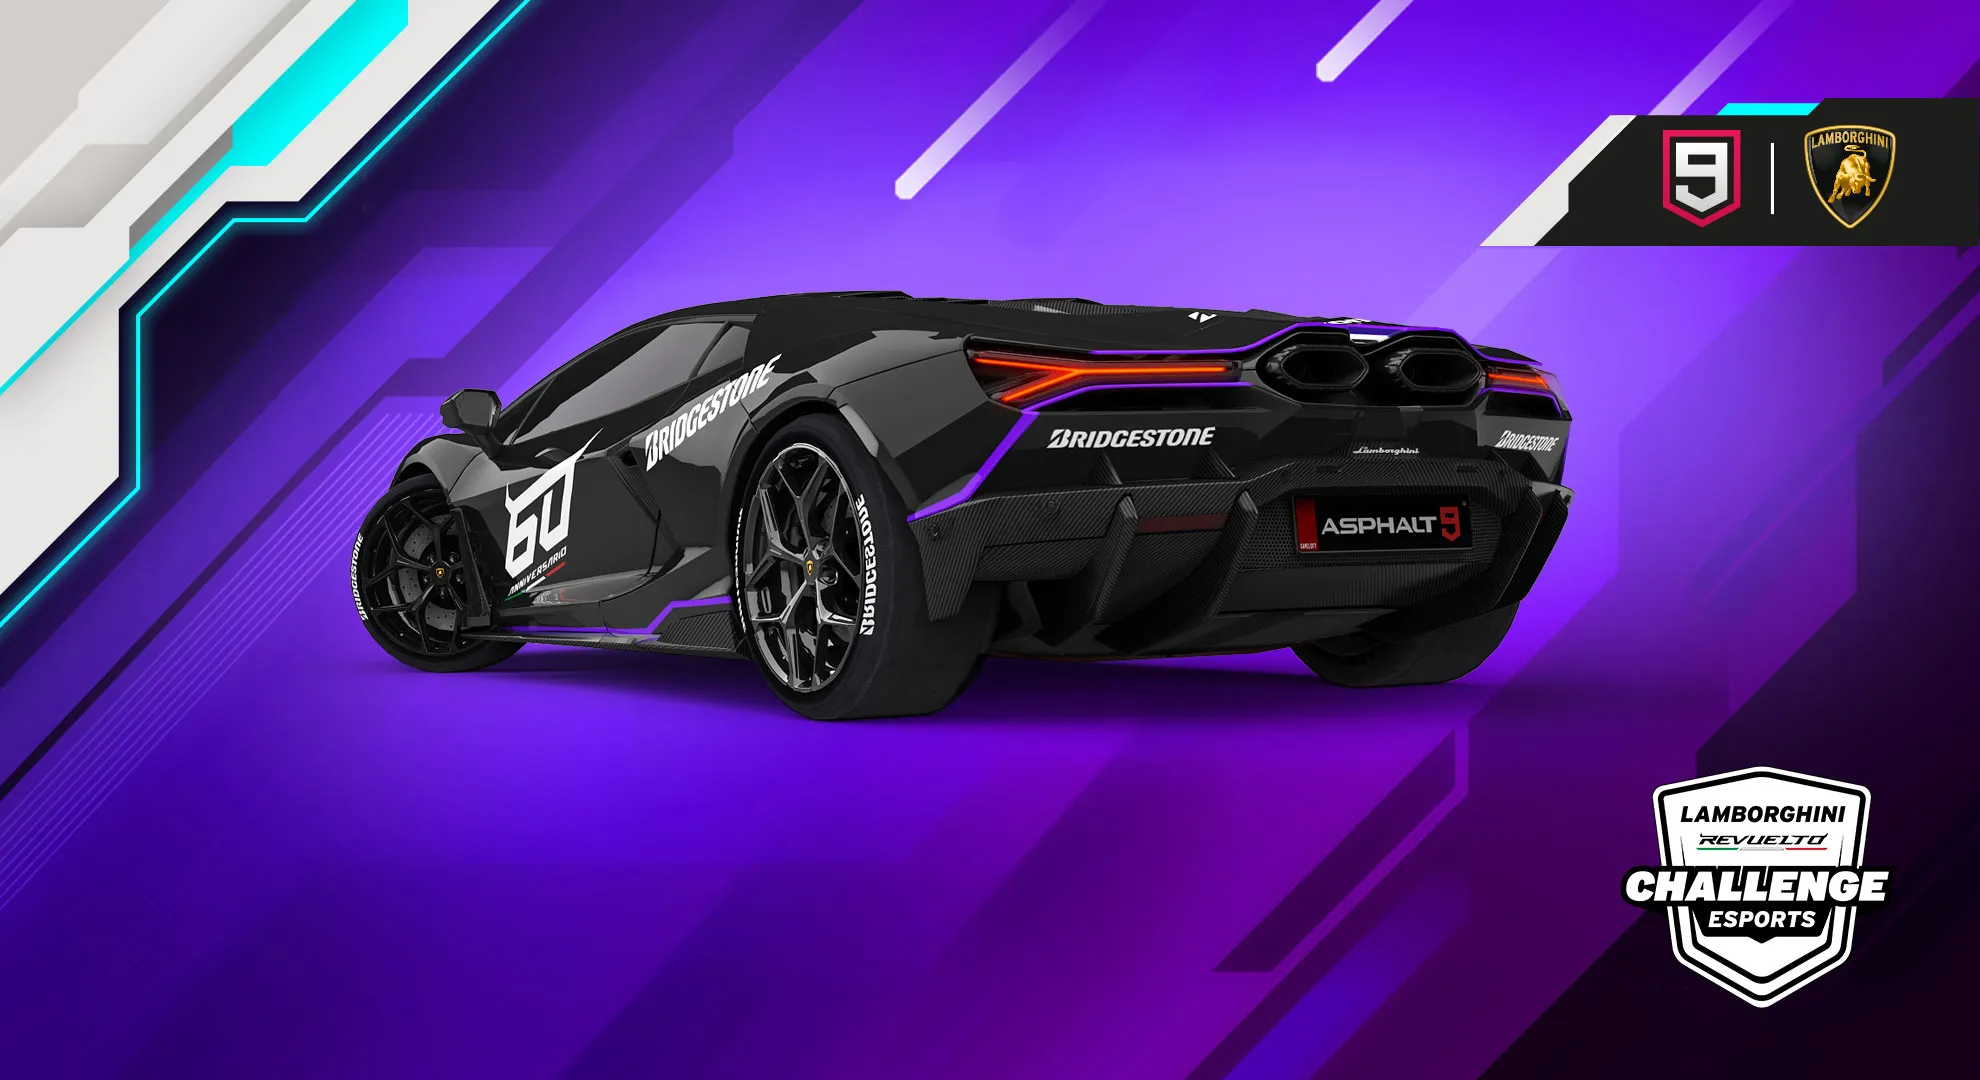 Siêu phẩm đua xe Asphalt 9: Legends ra mắt và công bố thử thách Lamborghini Revuelto eSports Challenge